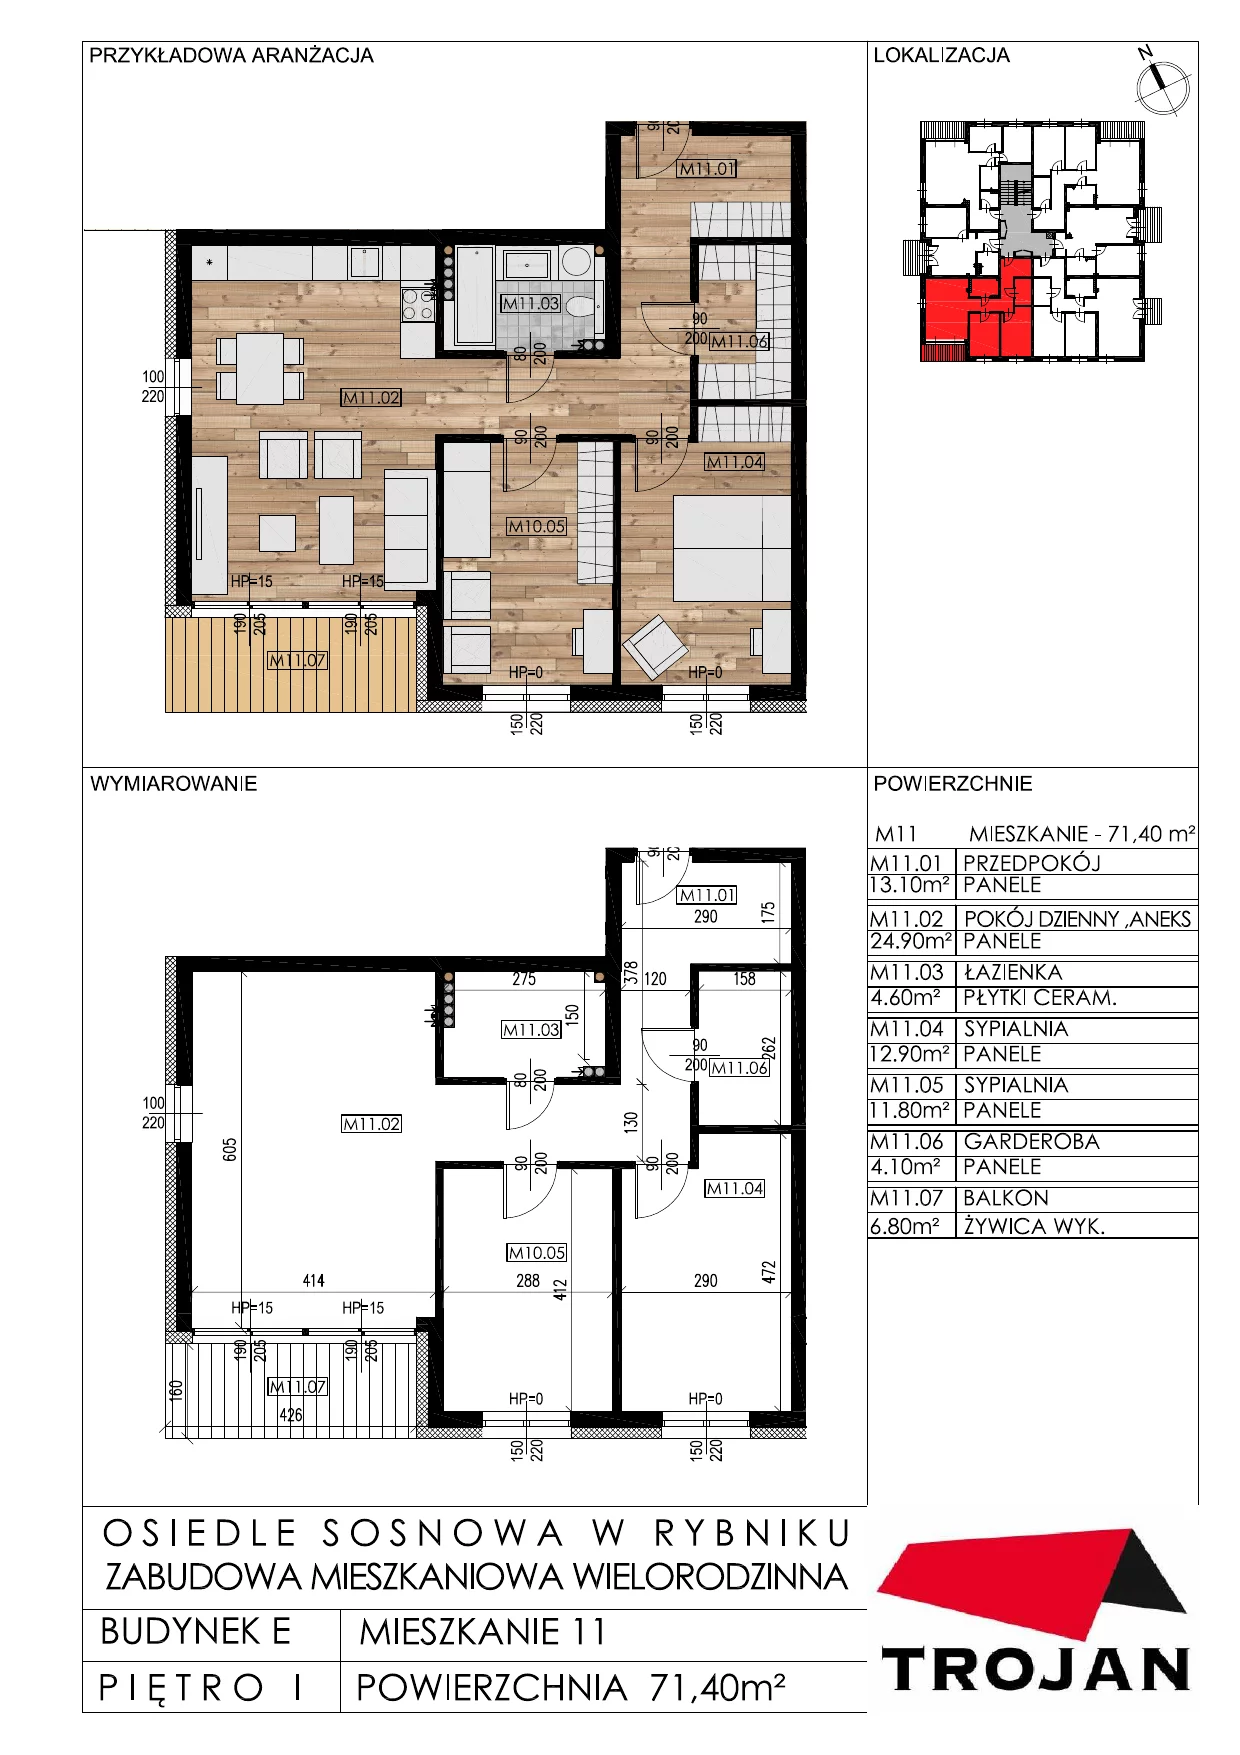 Mieszkanie 71,40 m², piętro 1, oferta nr E11, Osiedle Sosnowa, Rybnik, Paruszowiec-Piaski, ul. Sosnowa 20